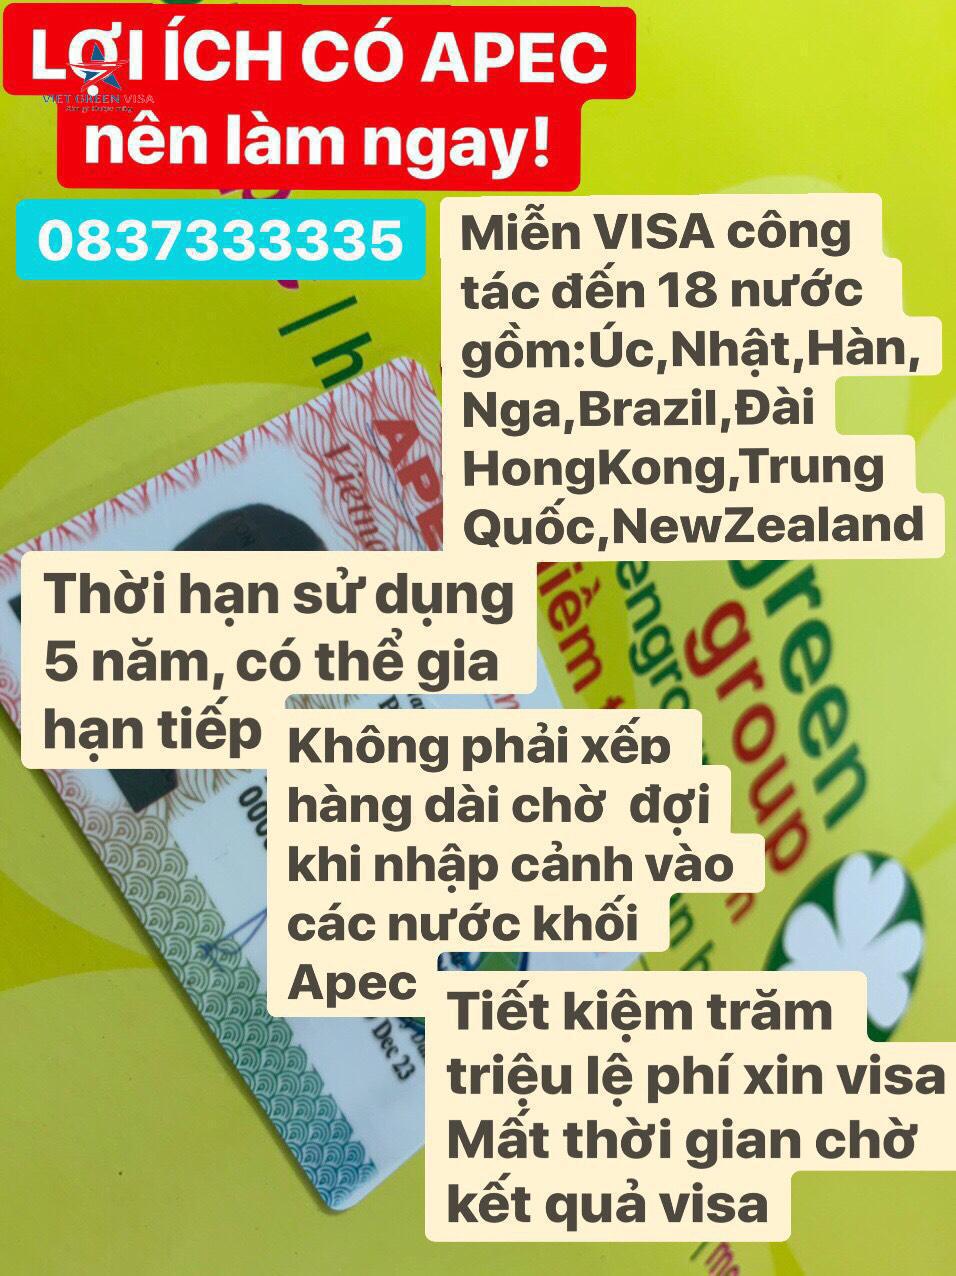 Dịch vụ gia hạn thẻ Apec tại Quảng Nam uy tín